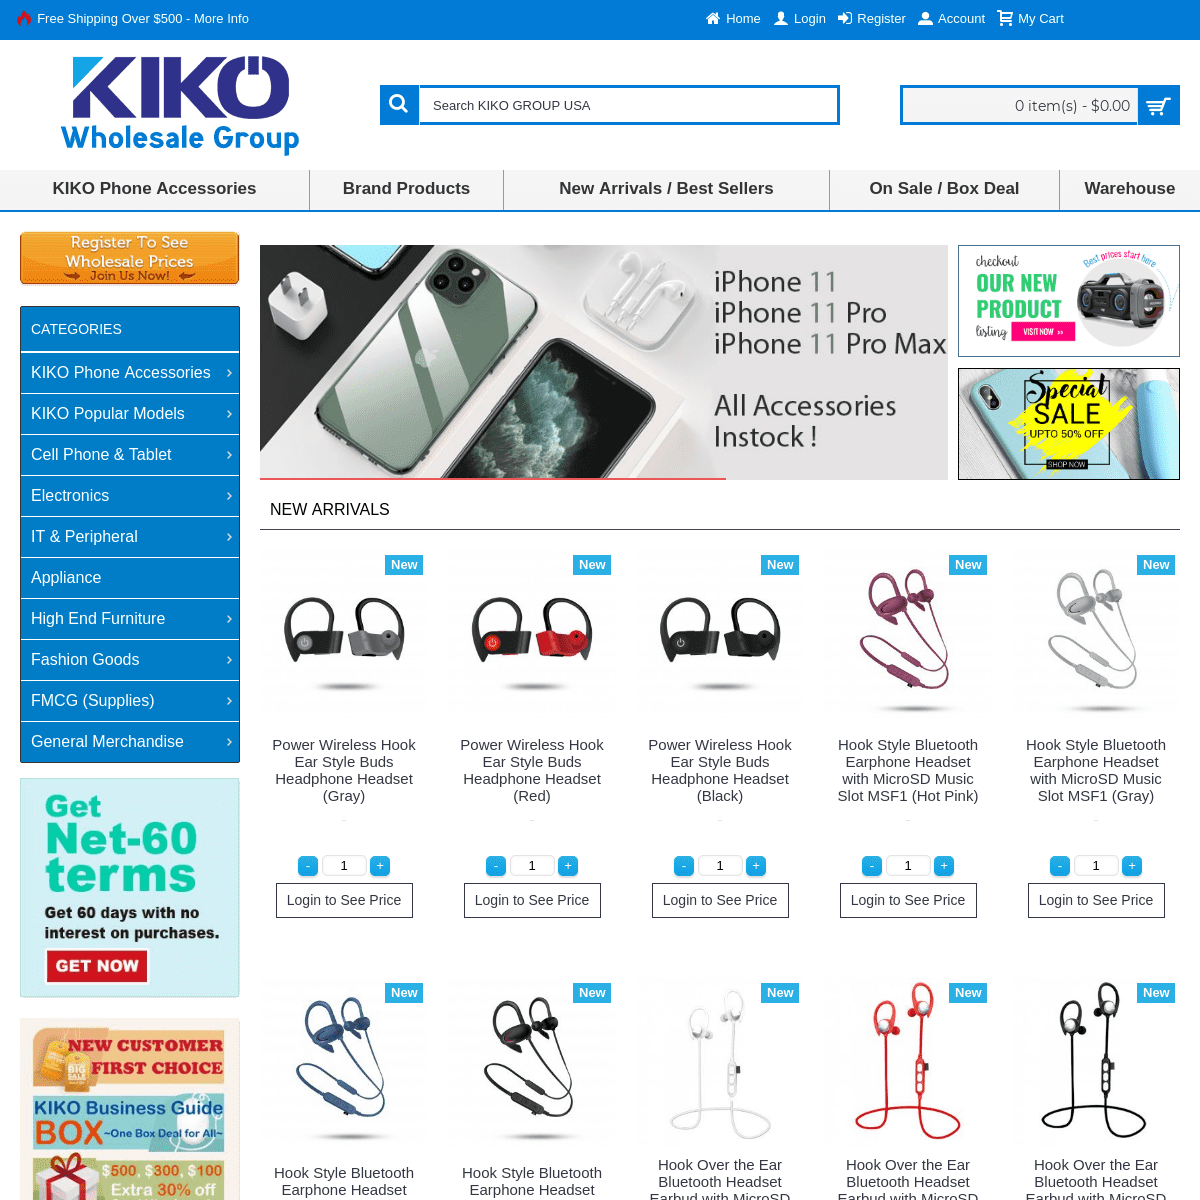 A complete backup of kikowireless.com